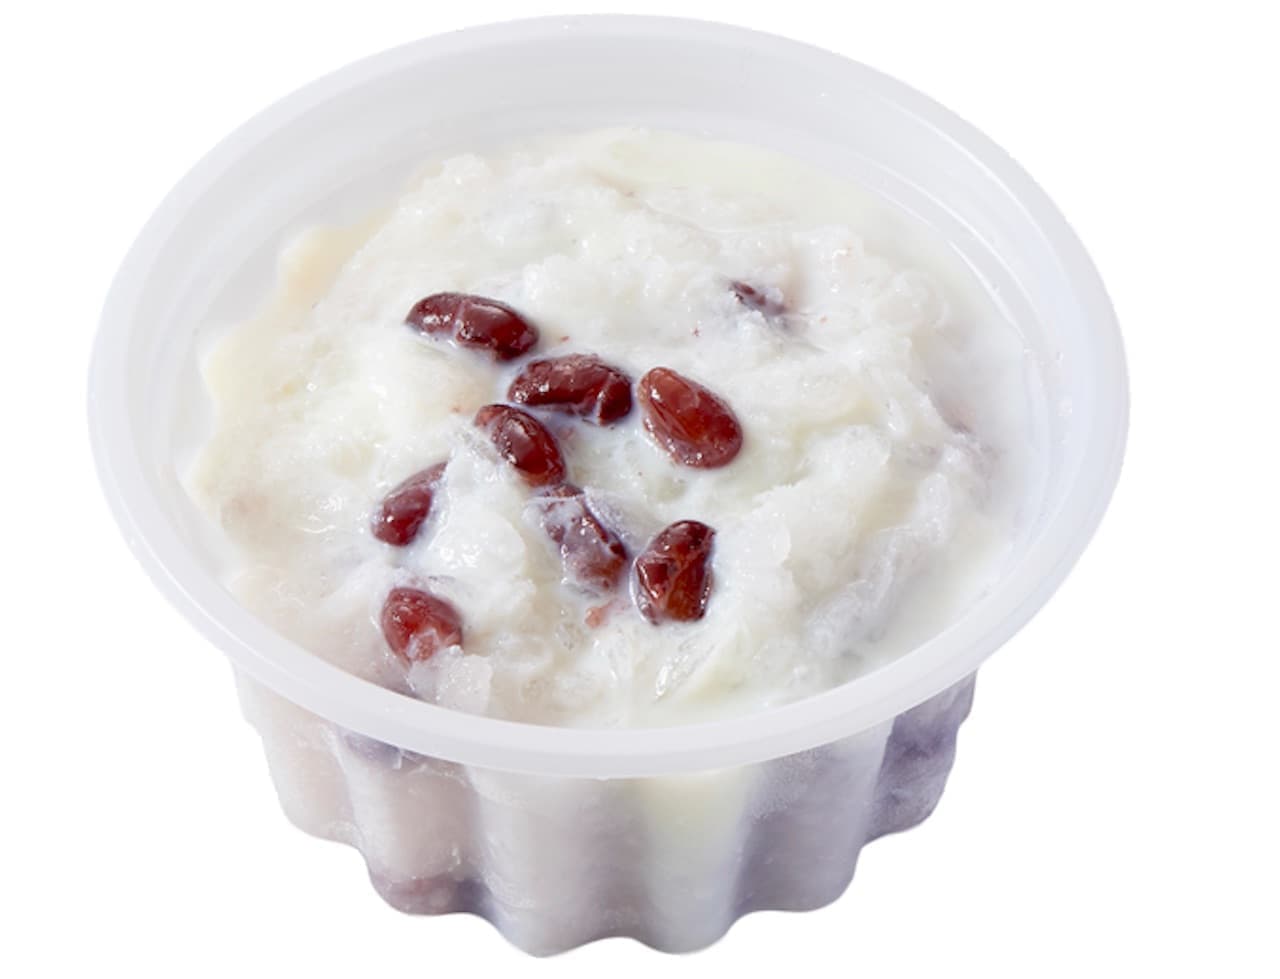 Chateraise "Shirashu Famous Water Shaved Ice Condensed Milk Kintoki with Amanattou of Hokkaido Azuki Beans"